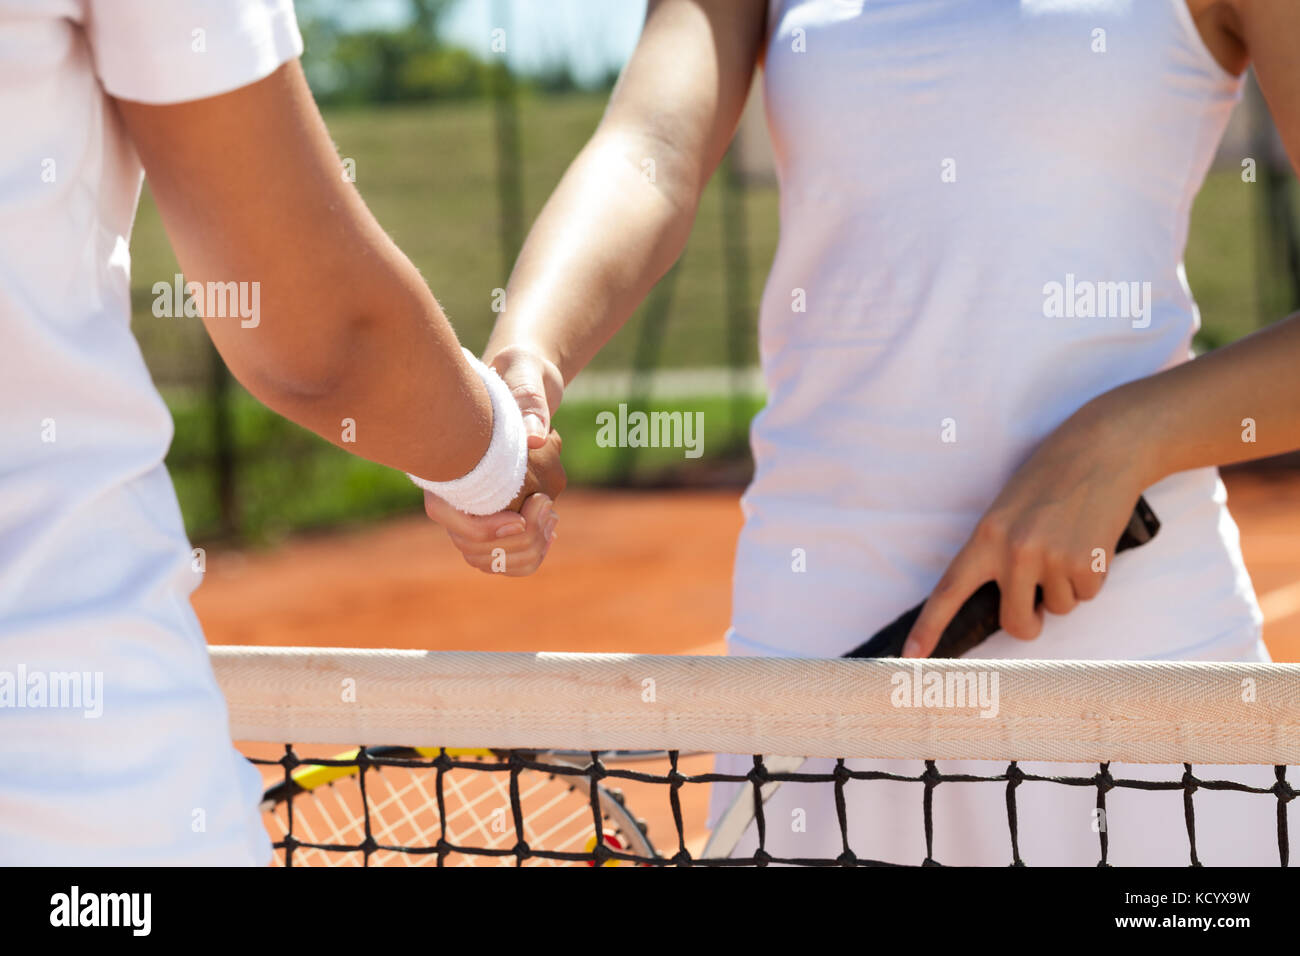 Stretta di mano ad una partita di tennis, congratulazioni dopo win Foto Stock